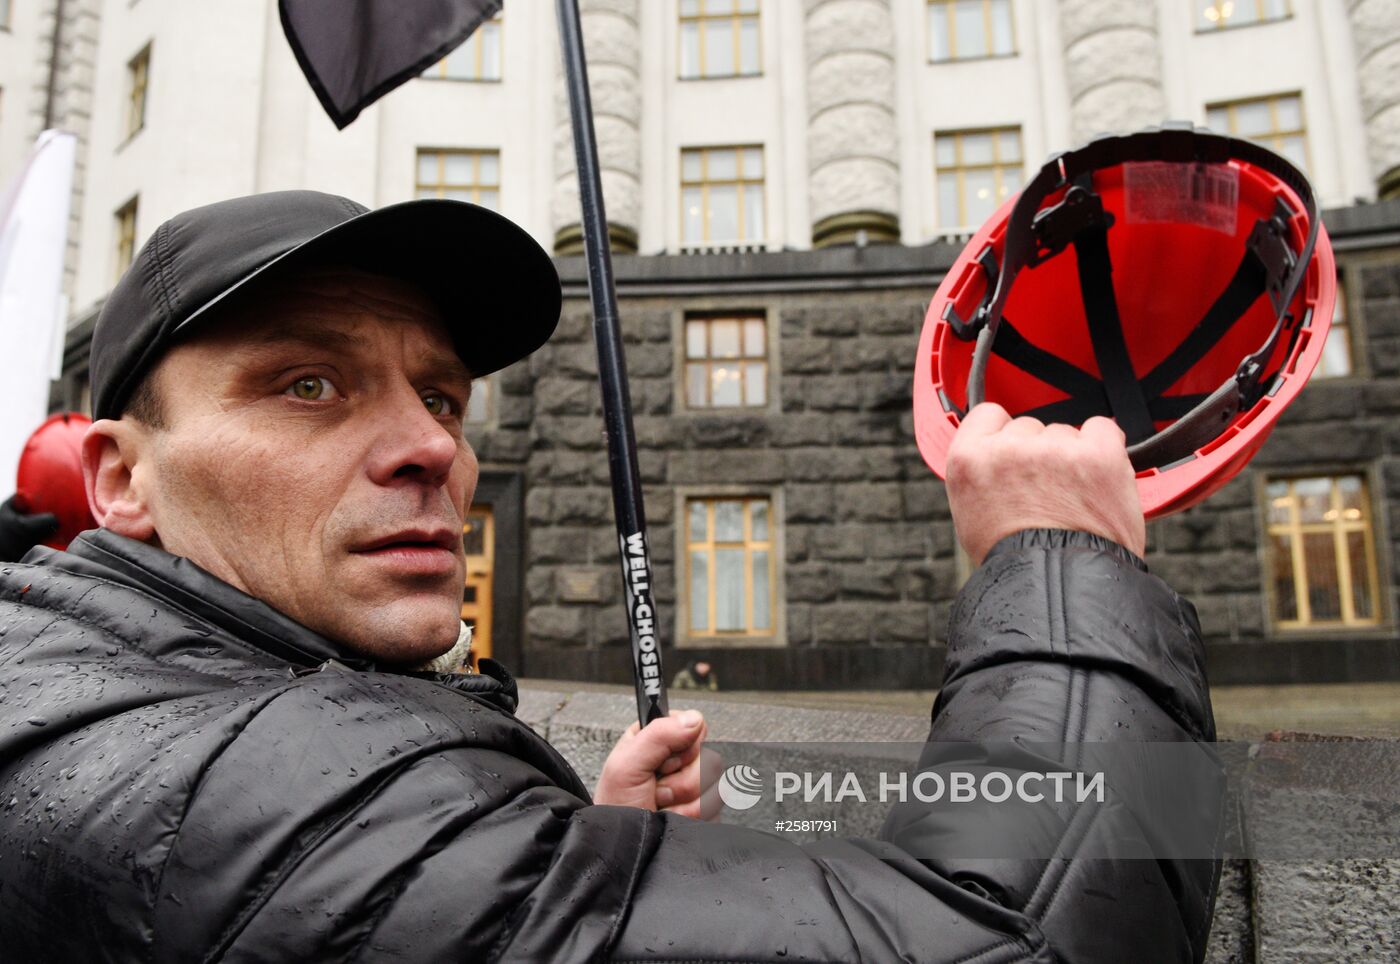 Акция протеста шахтеров у здания Верховной рады в Киеве